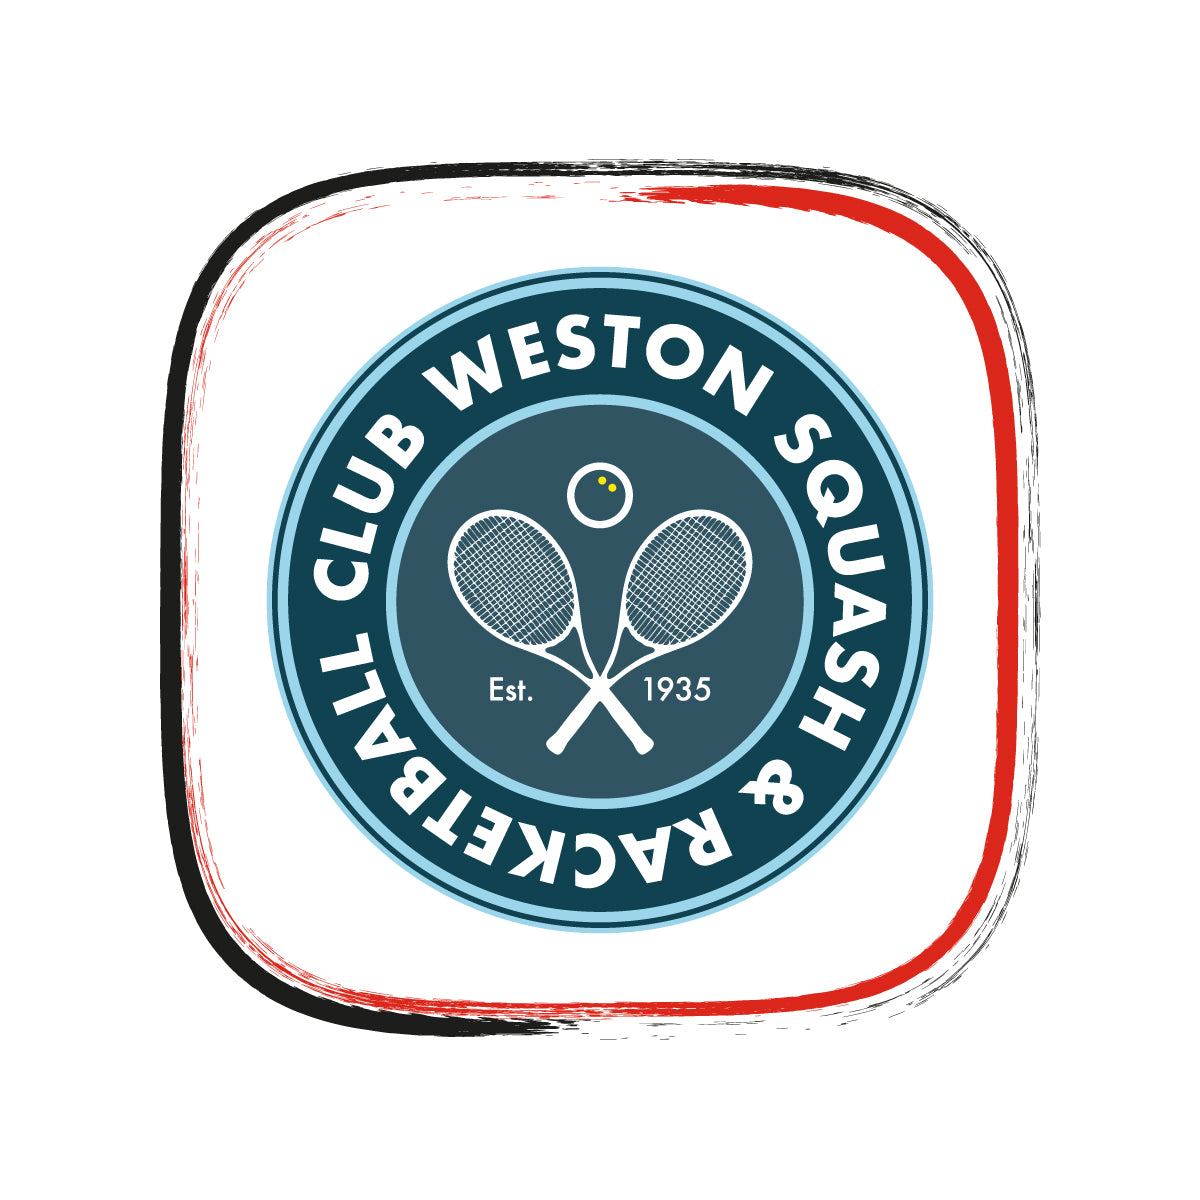 Weston-super-Mare Squash